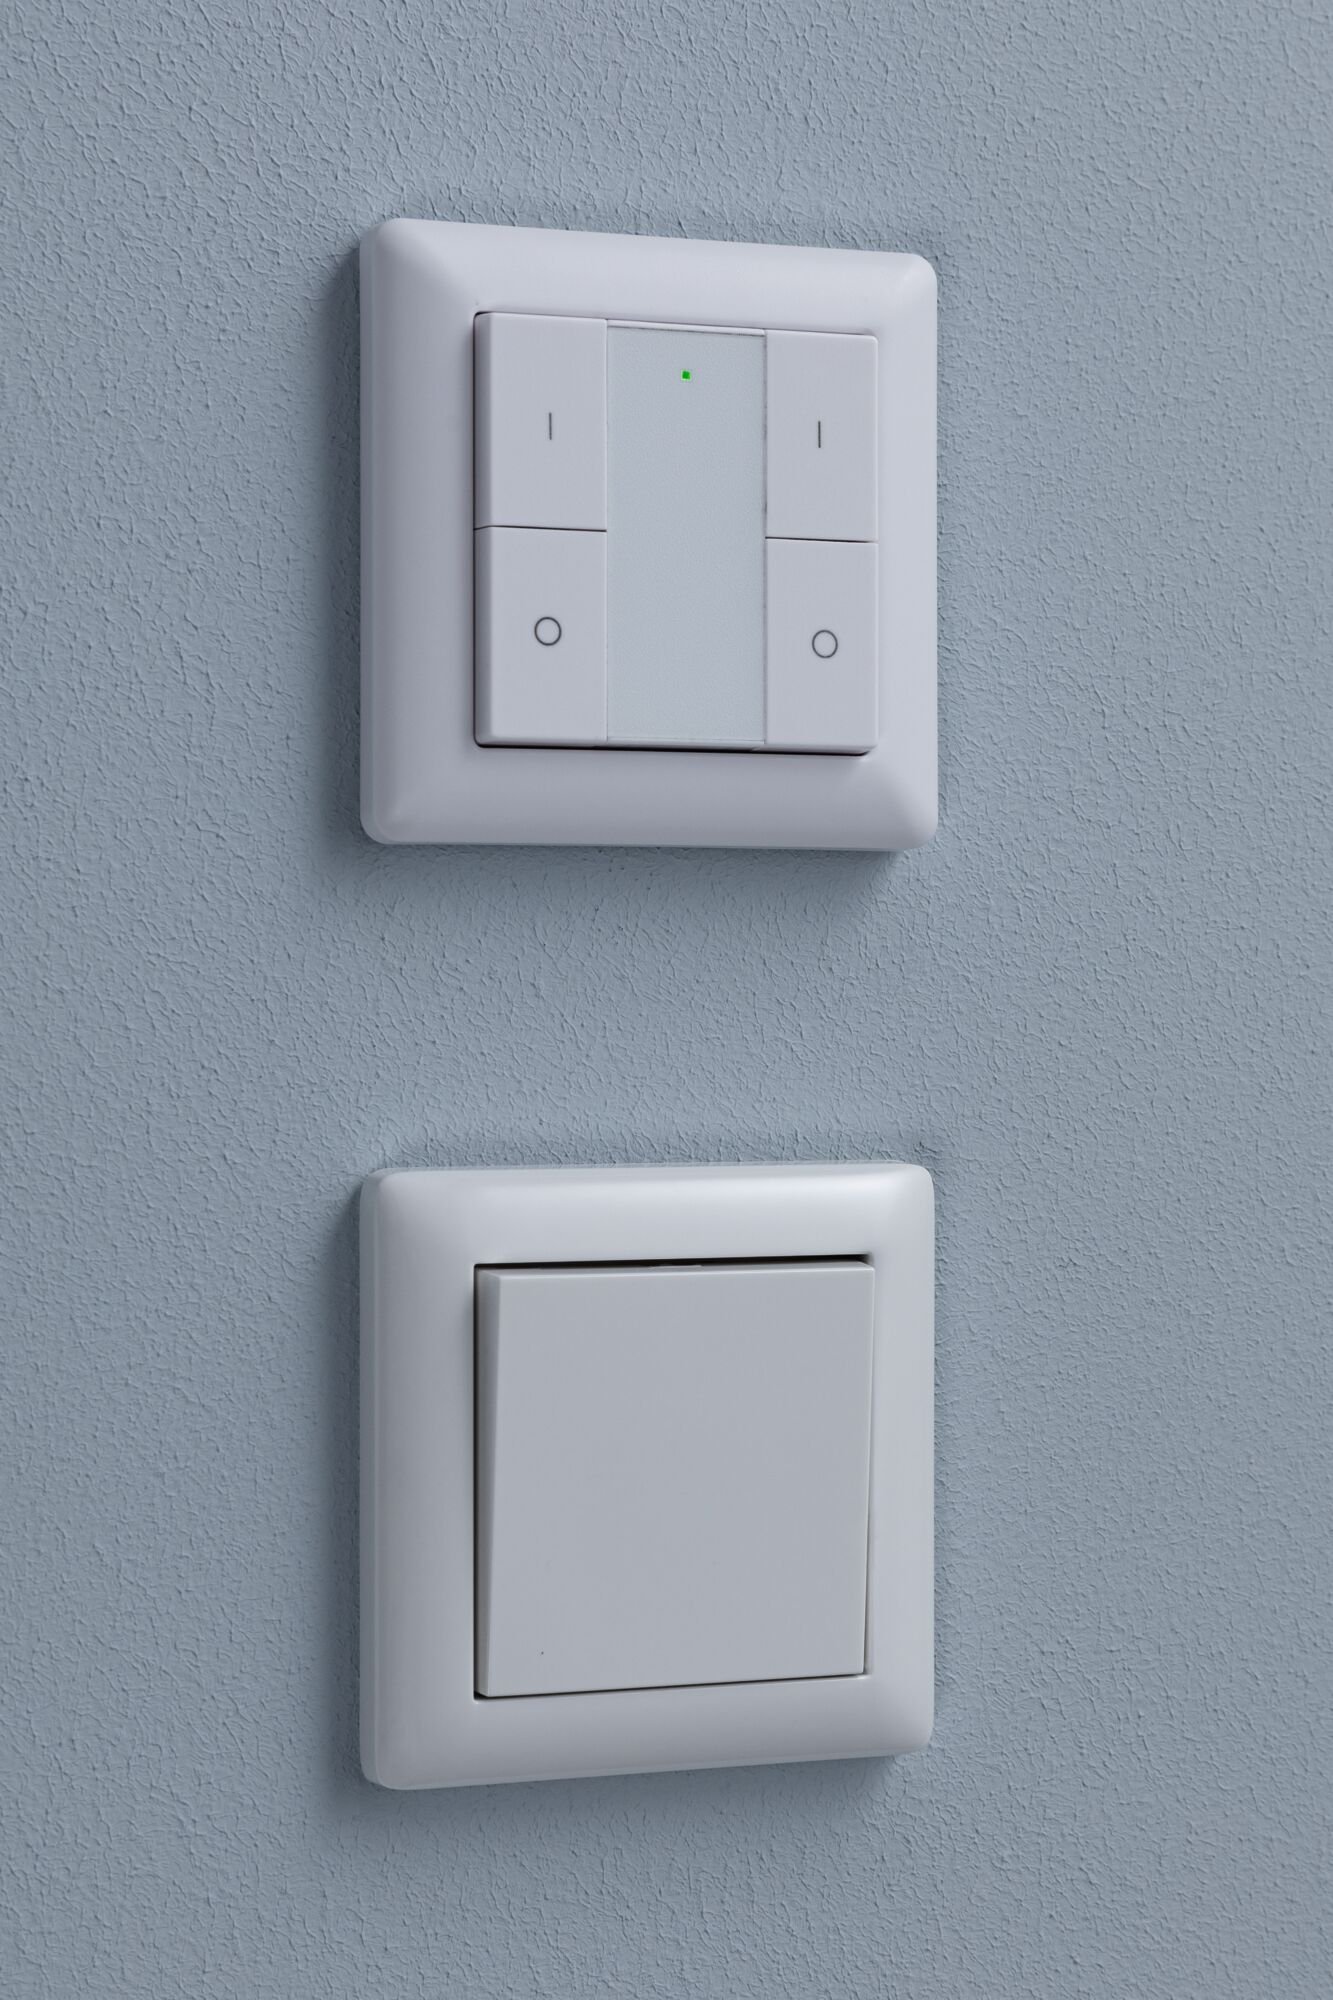 Kits de démarrage Zigbee 3.0 Smart Home smik Gateway + Ampoule LED Filament G95 Tunable White + Interrupteur